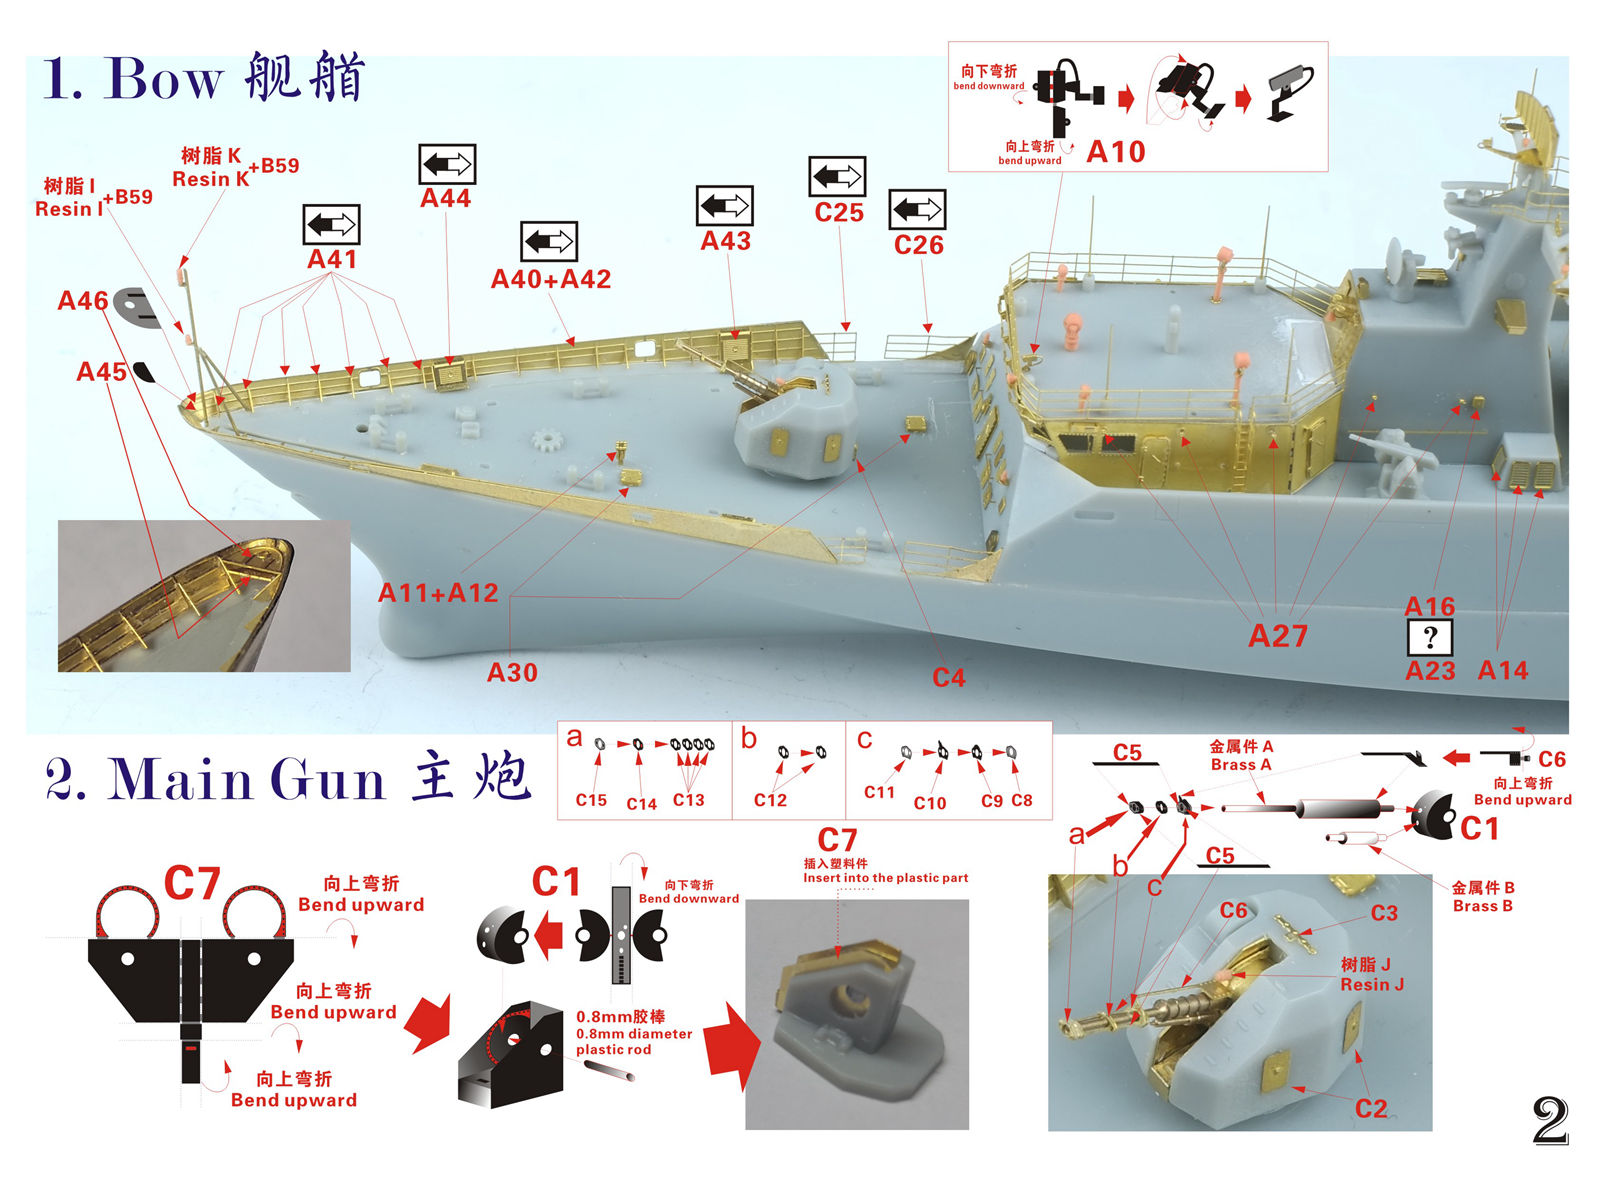 1/350 现代中国海军056型护卫舰超级改造套件(配威骏) - 点击图像关闭